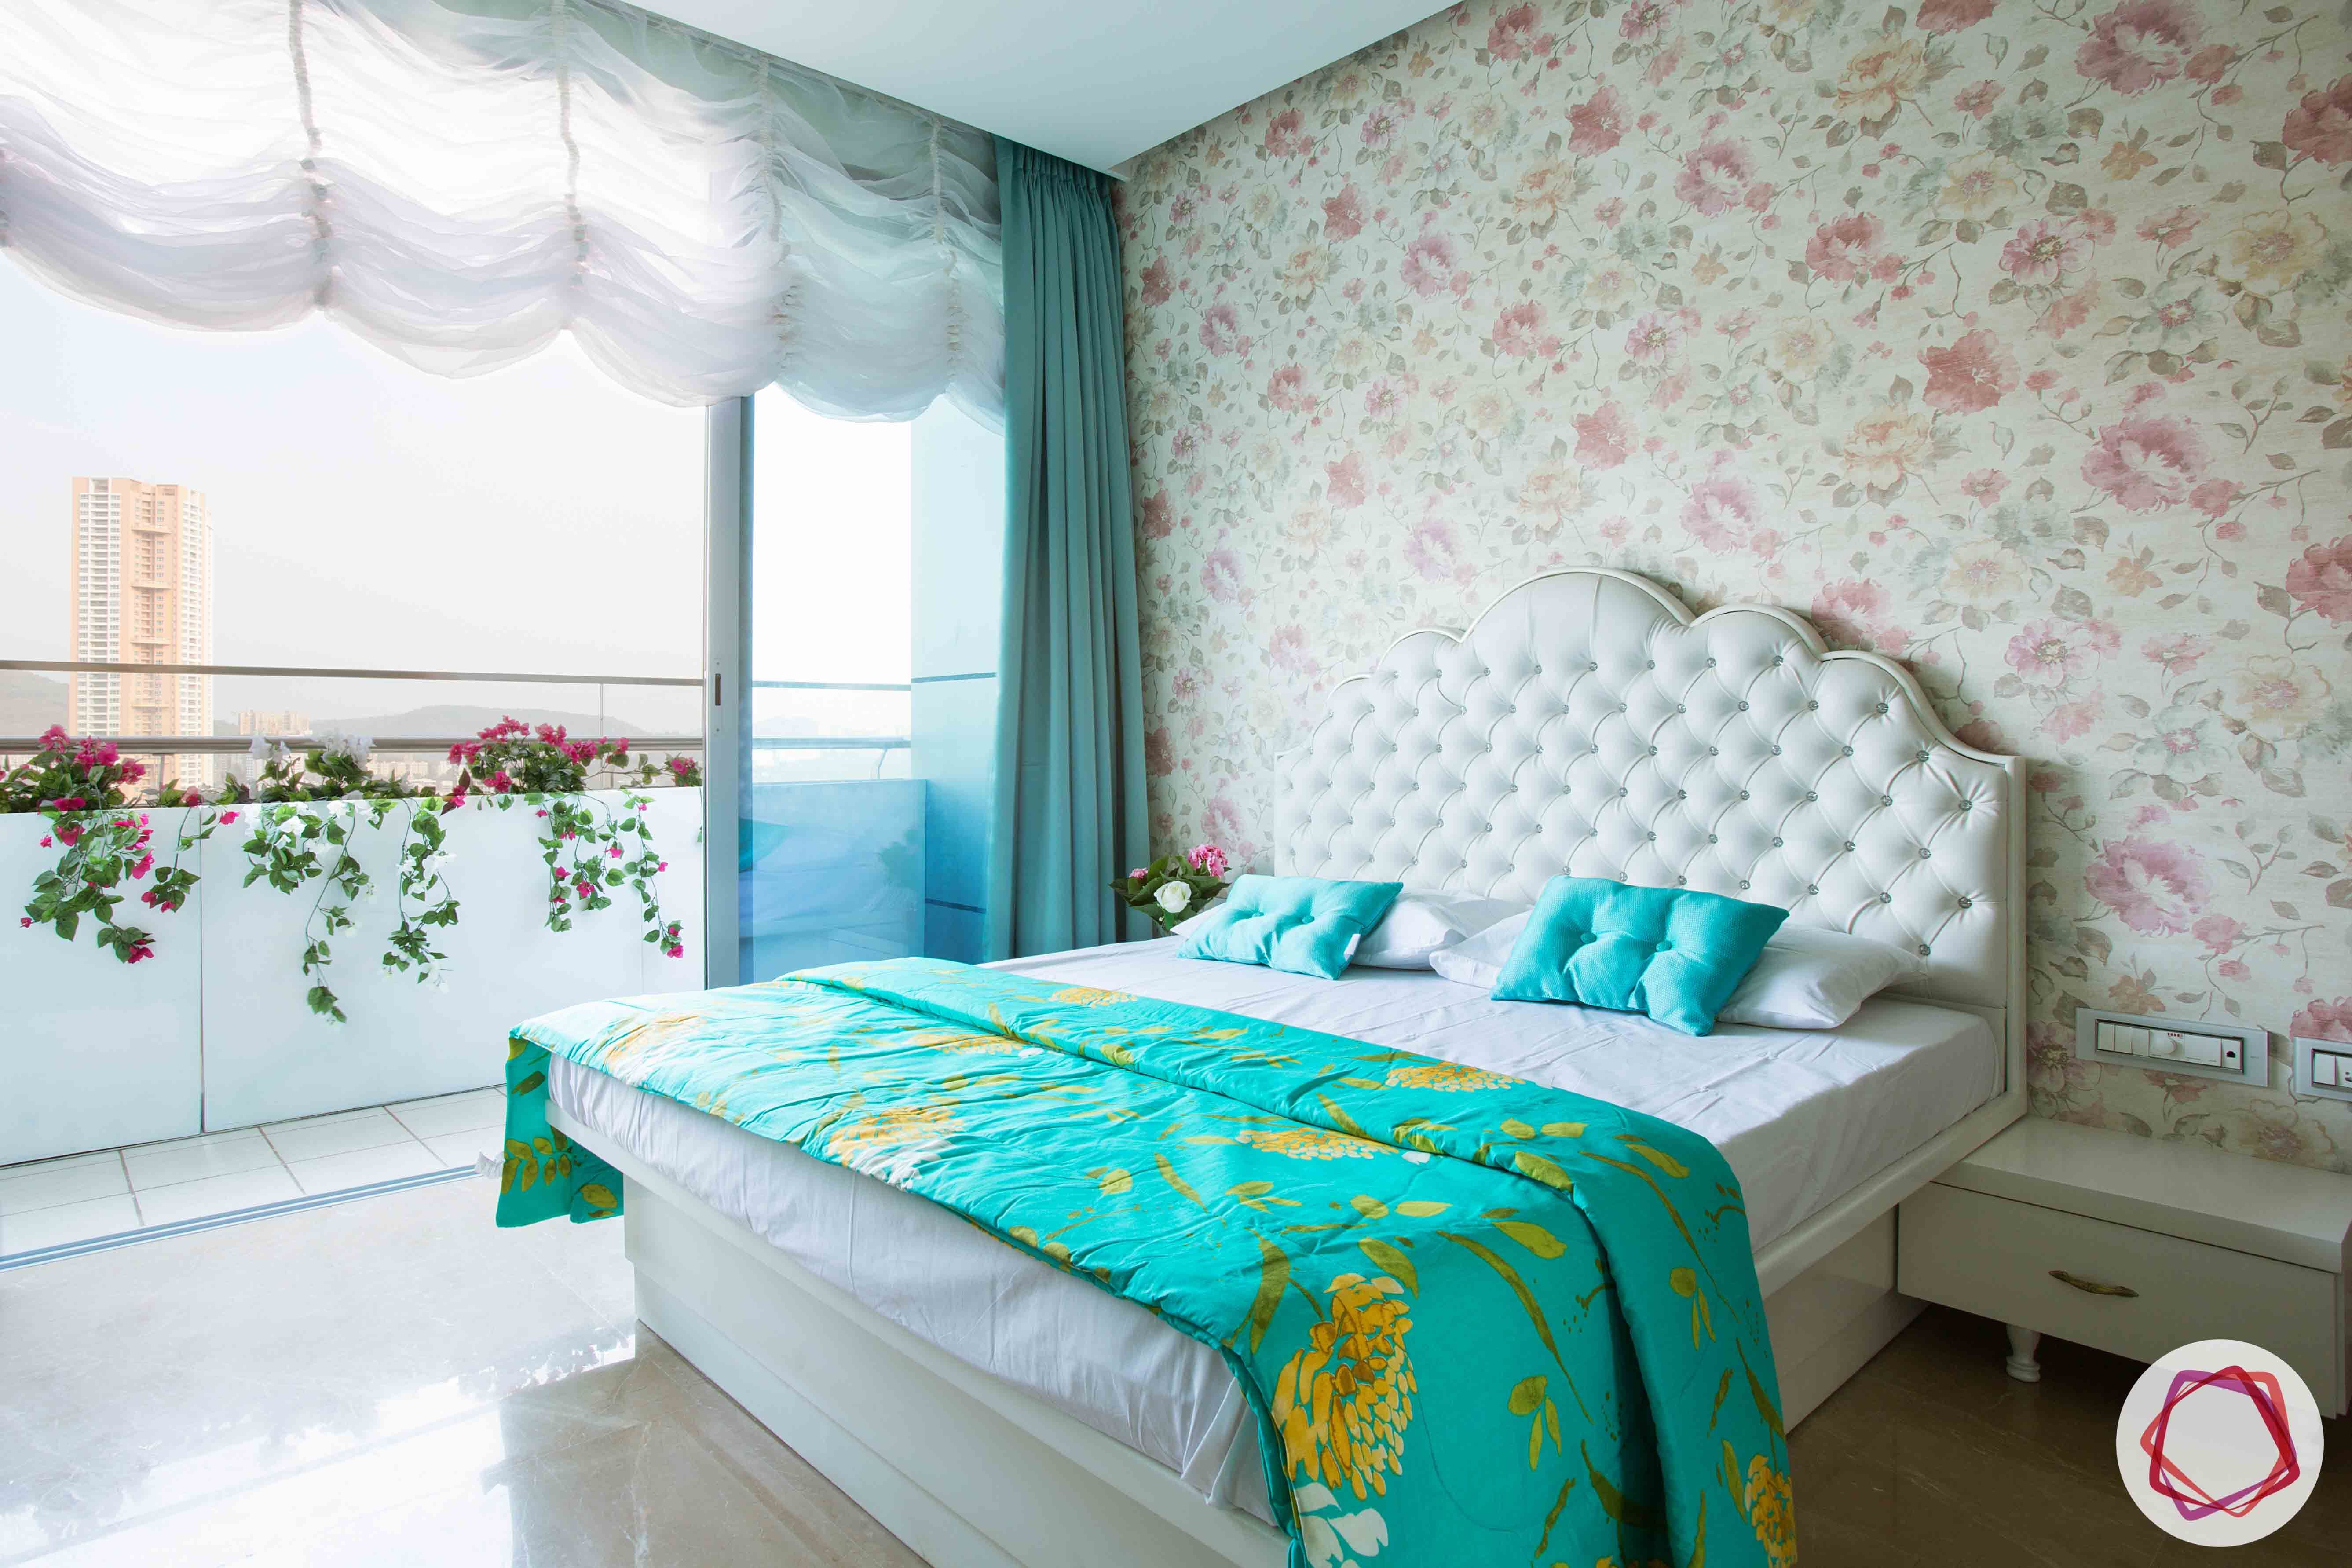 dream room-floral wallpaper designs-white curtain ideas